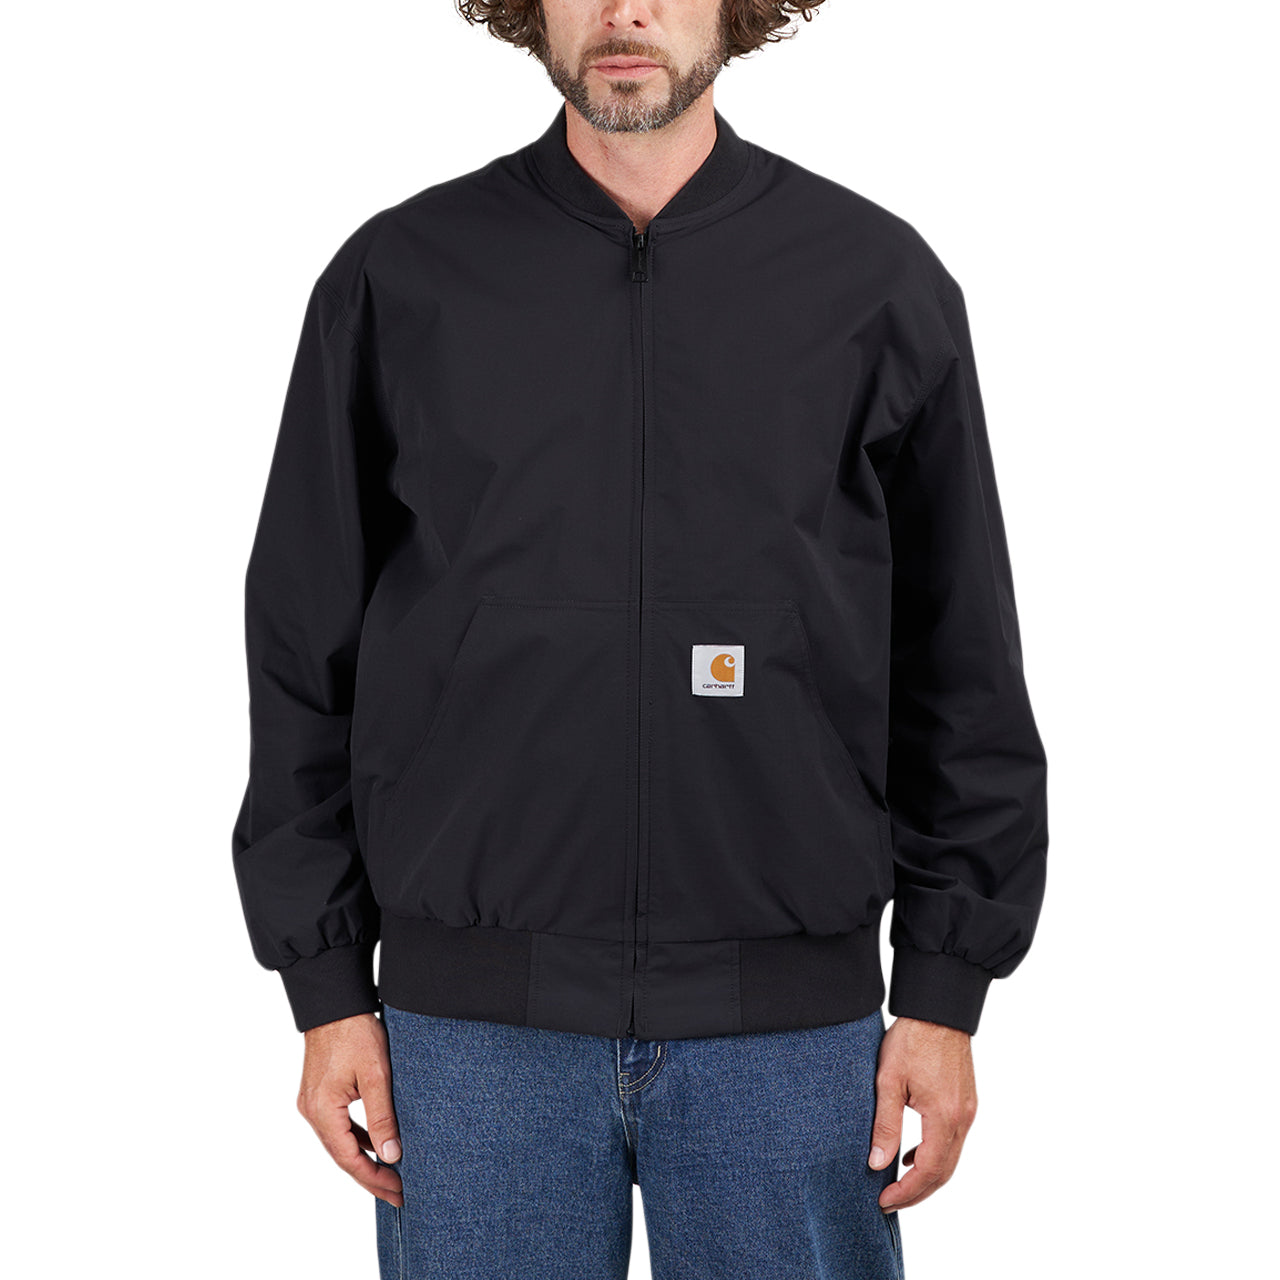 Carhartt WIP active jacket in black